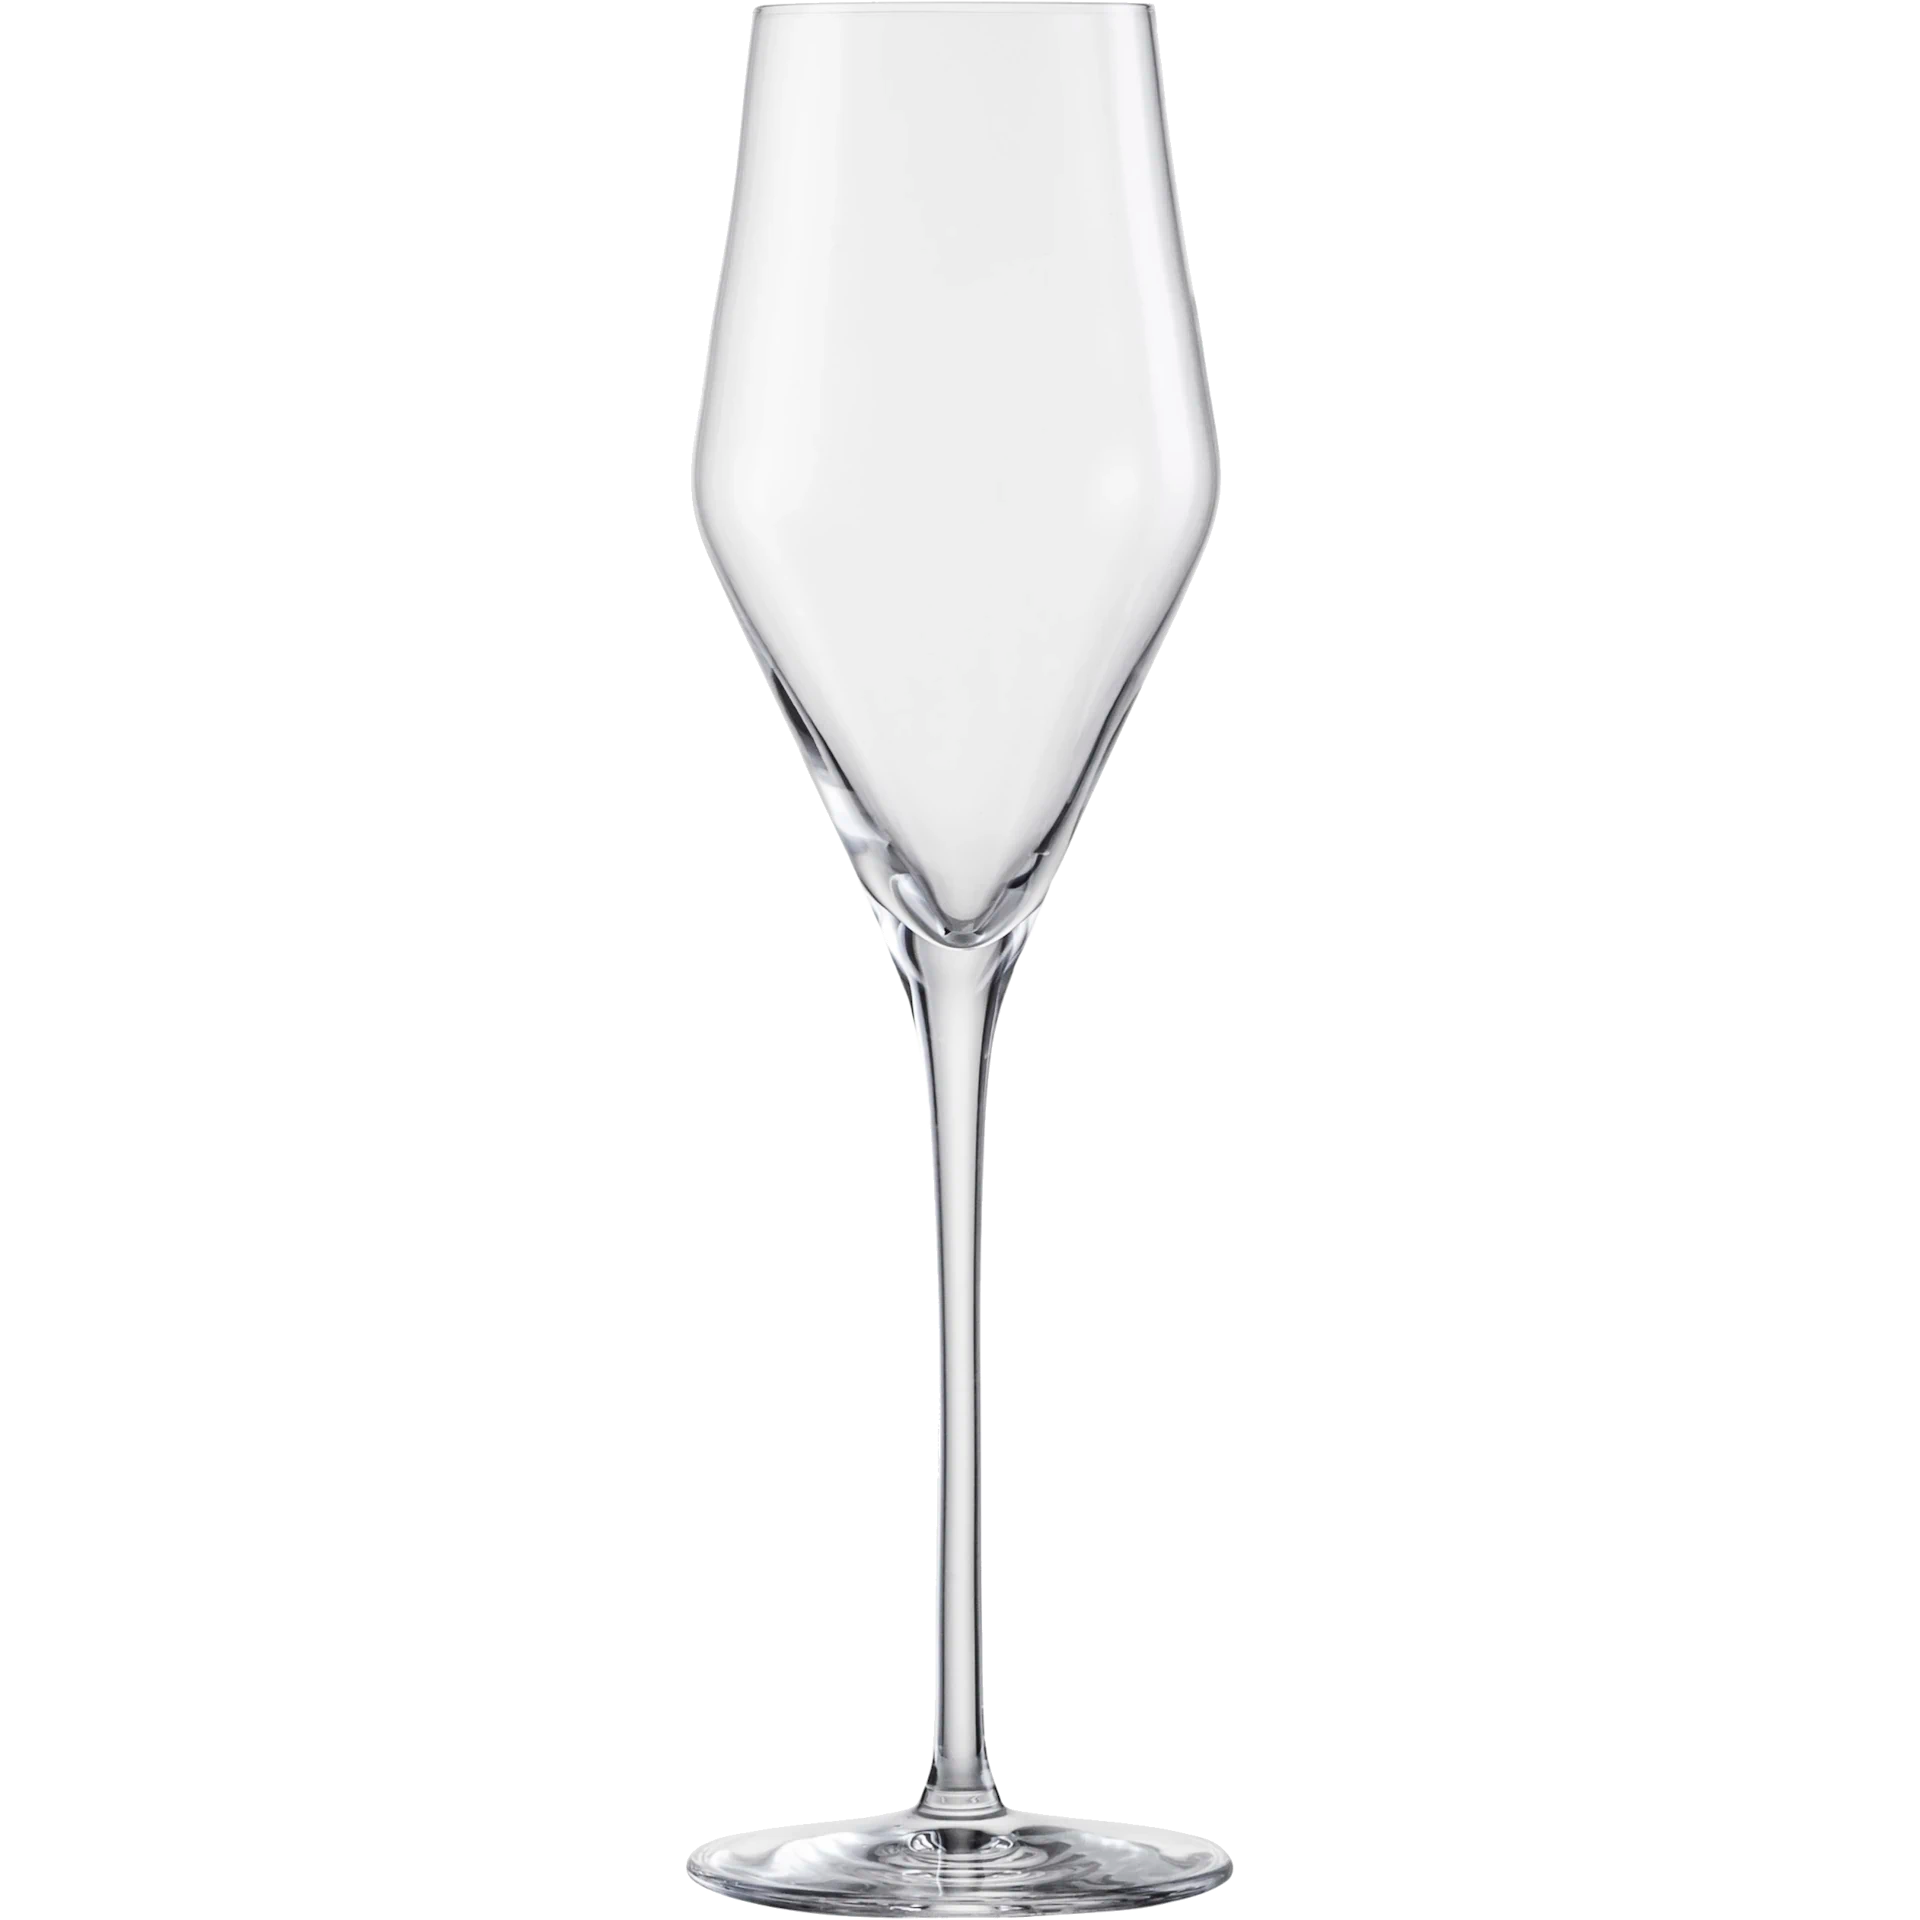 Eisch Champagnerglas Sky SENSISPLUS - 4 Stück im Geschenkkarton 518/7 Einzelglas